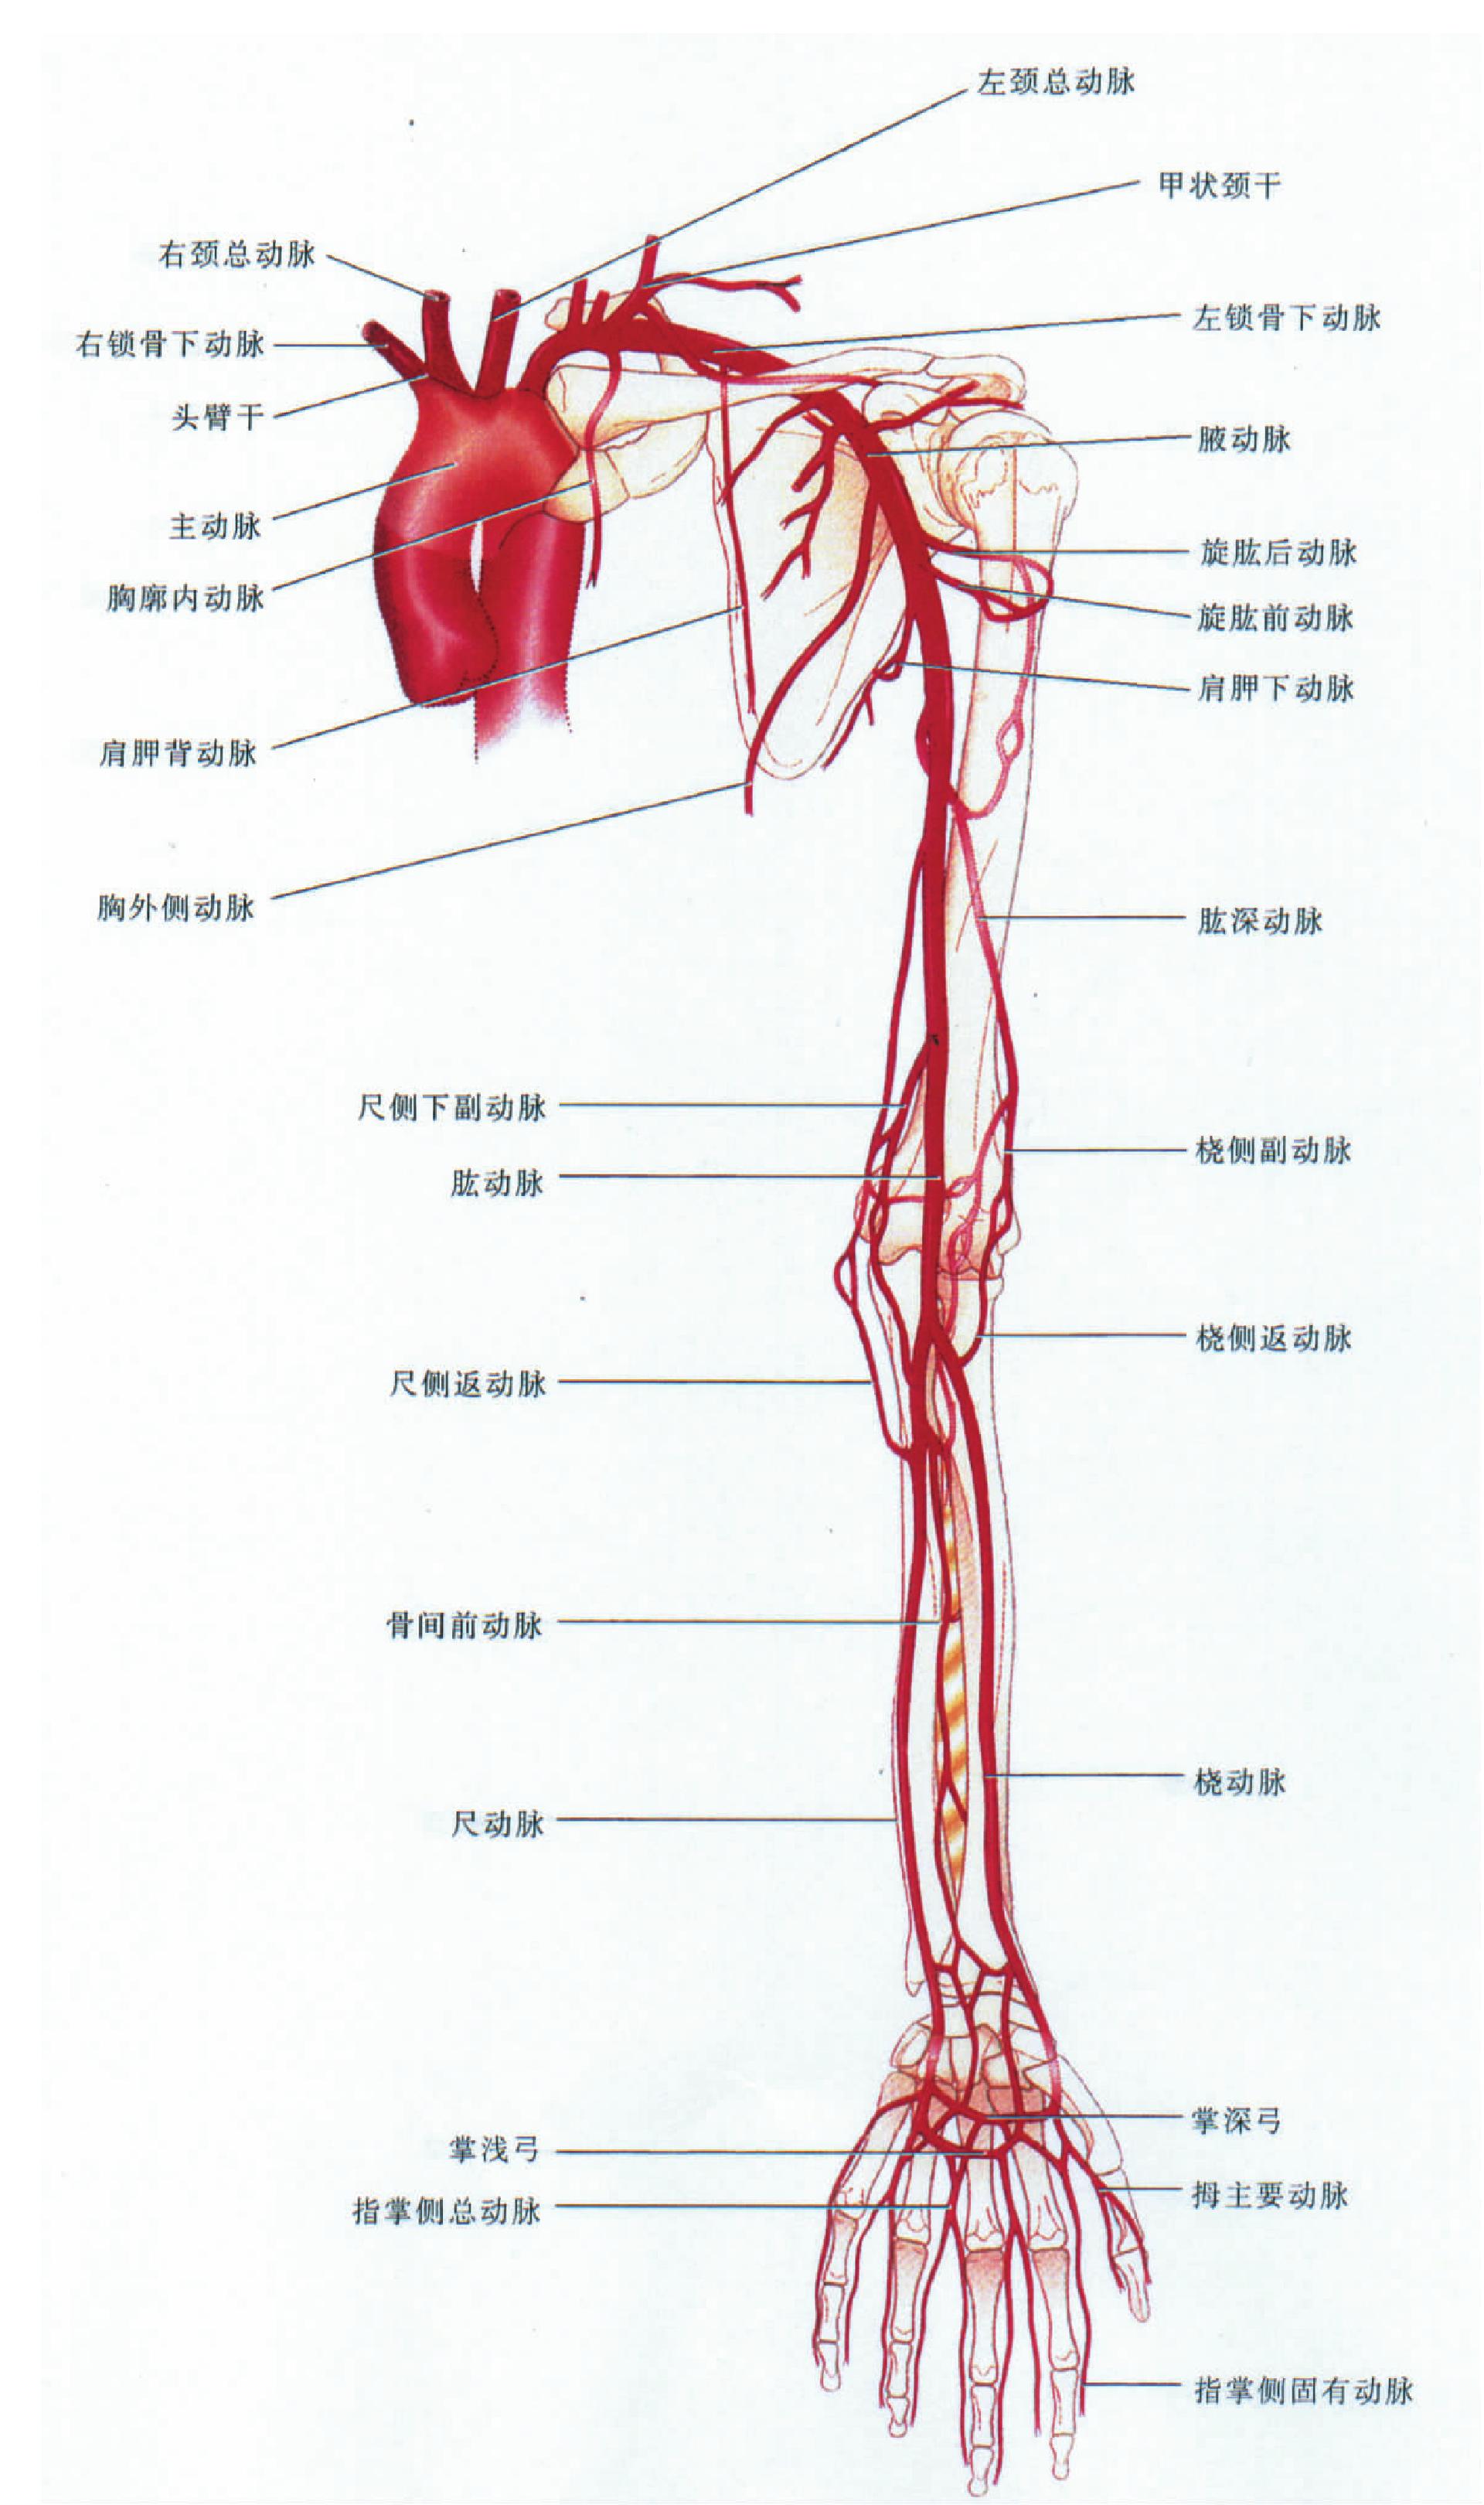 图286 上肢浅静脉-人体解剖组织学-医学